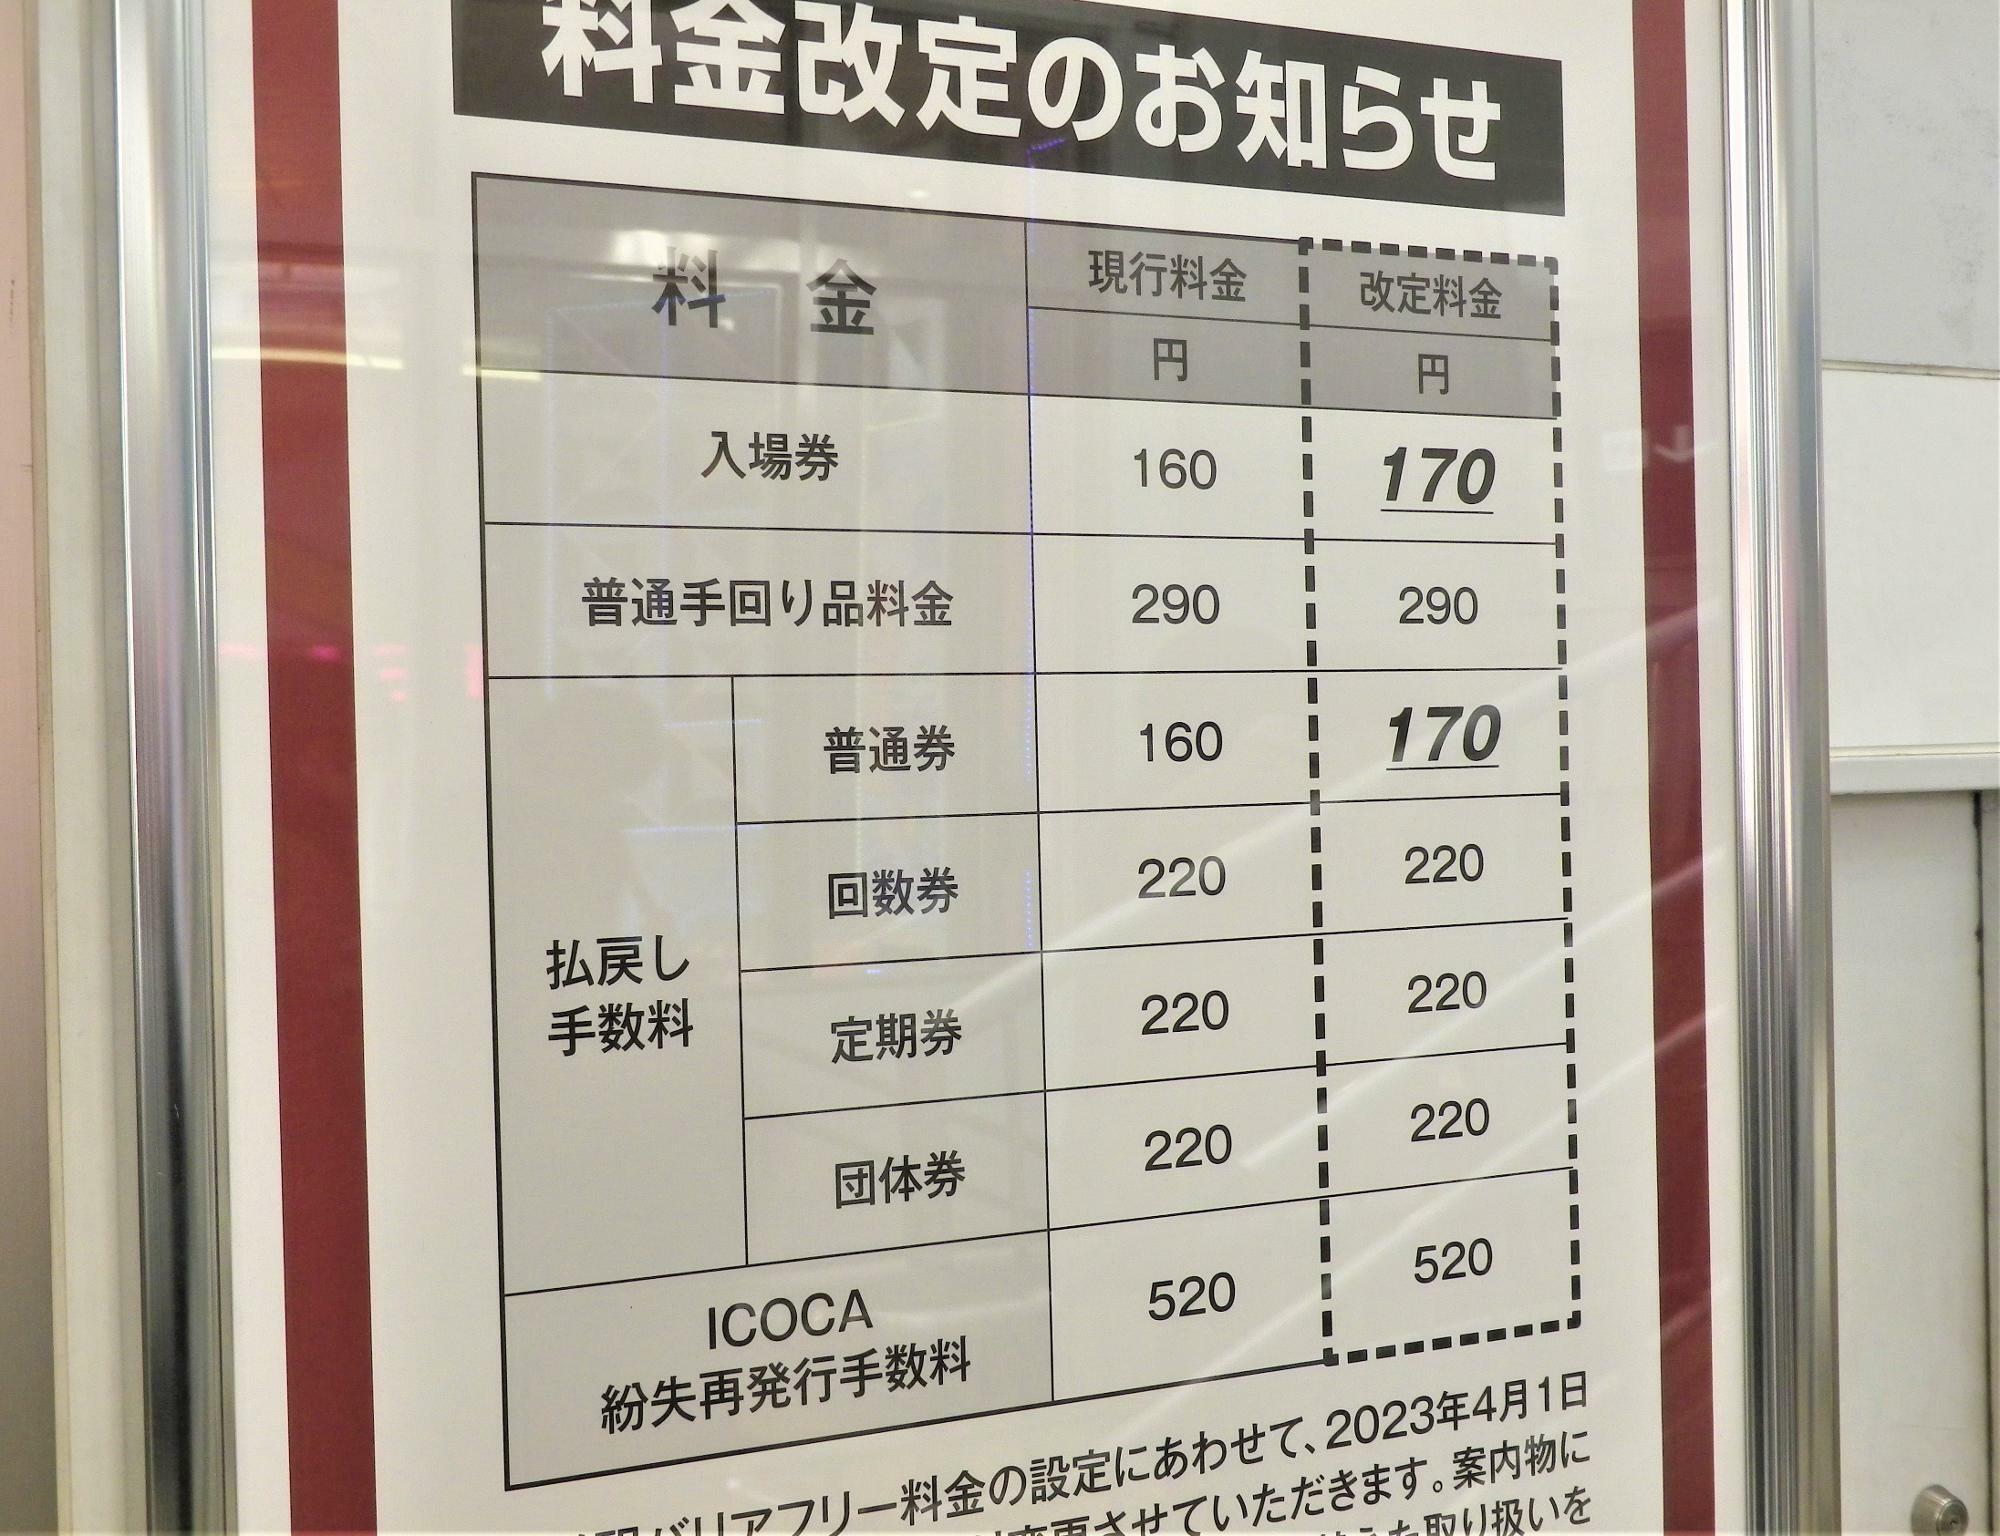 「入場券」と「普通乗車健払戻し手数料」が10円上がります。